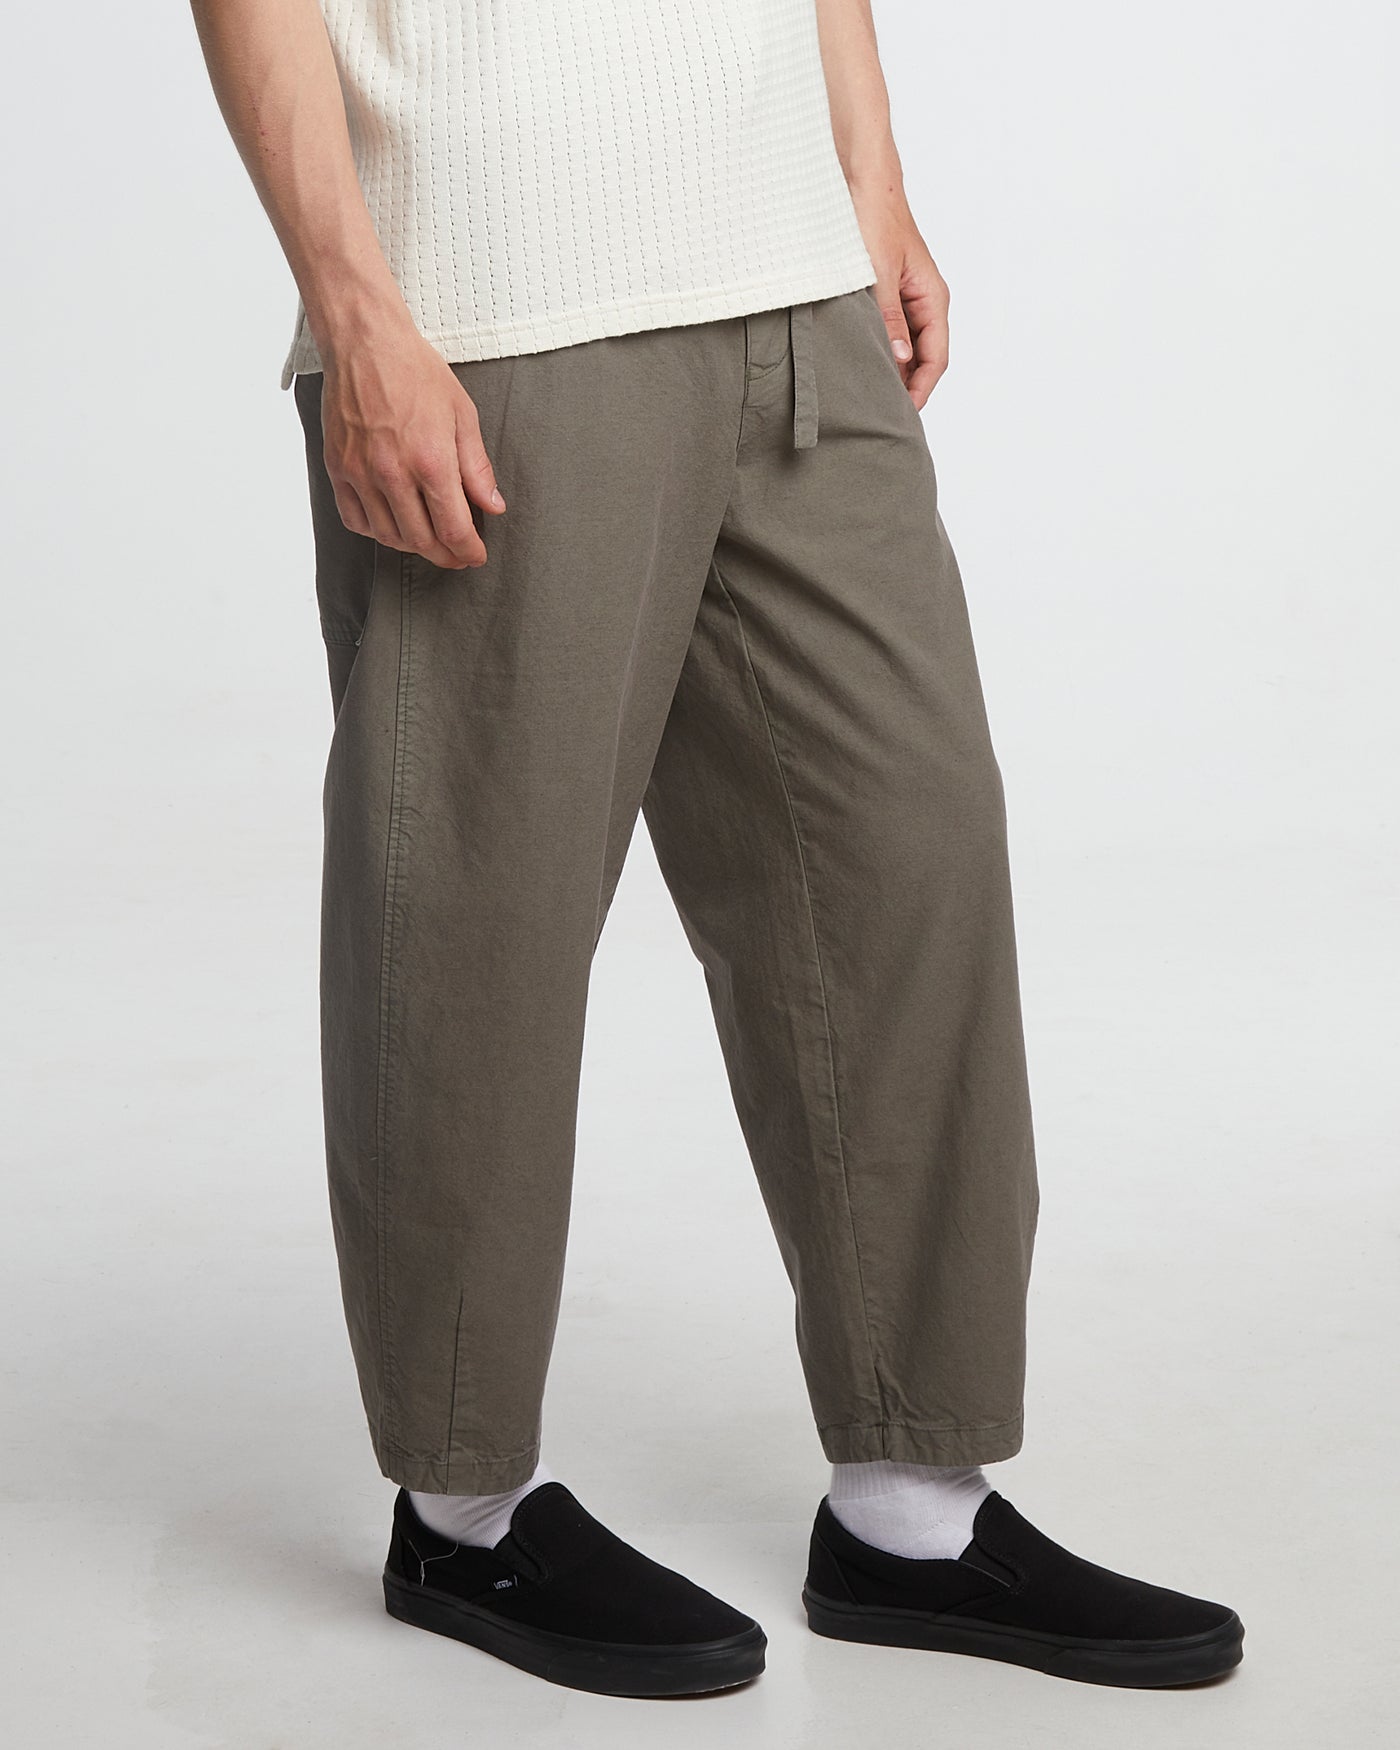 Pasha Pants Cotton Linen Cobblestone